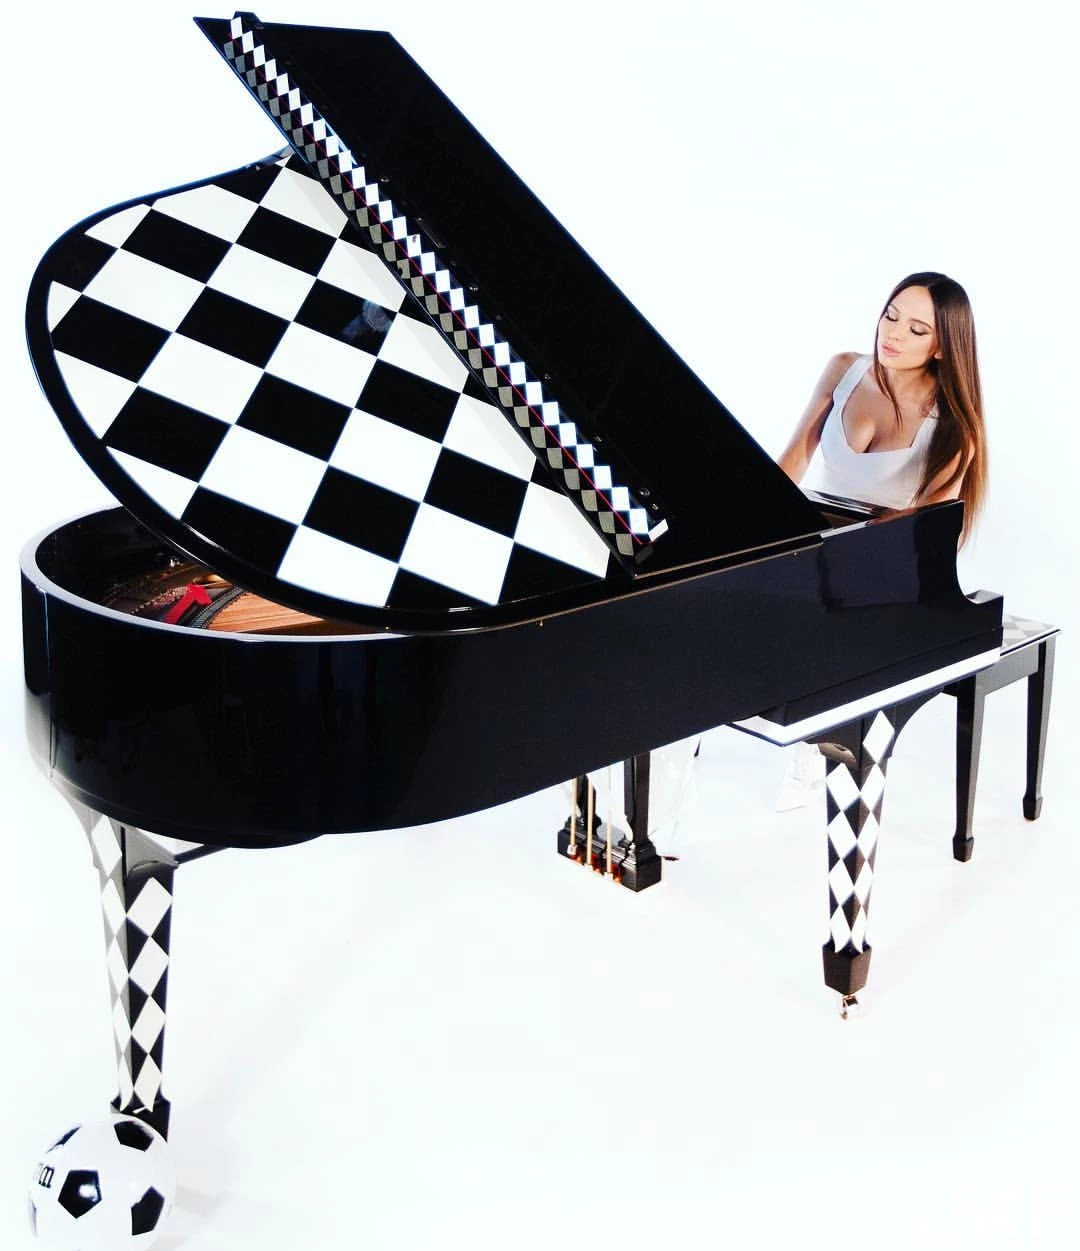 超犯規鋼琴演奏家 Lola Astanova 逆天長腿踩不停 讓人看到硬的超難受-11